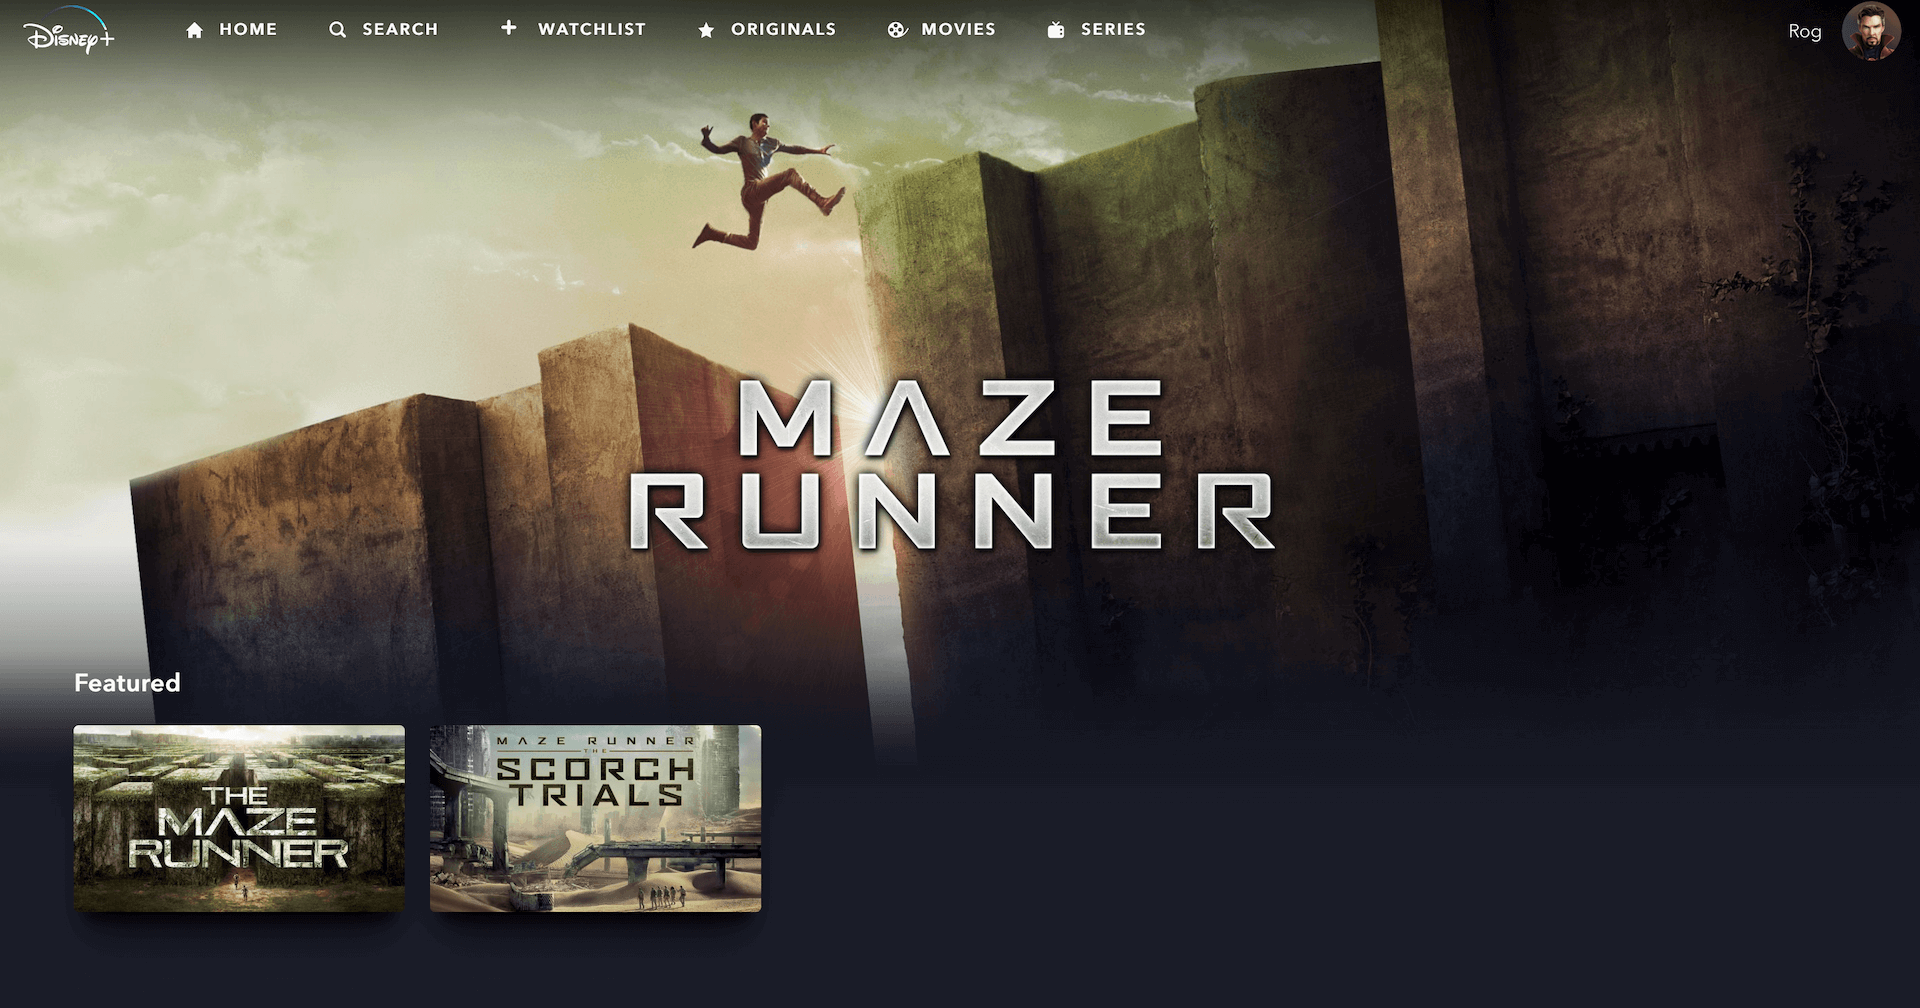 MAZE RUNNER 2 Trailer (Movie HD) 